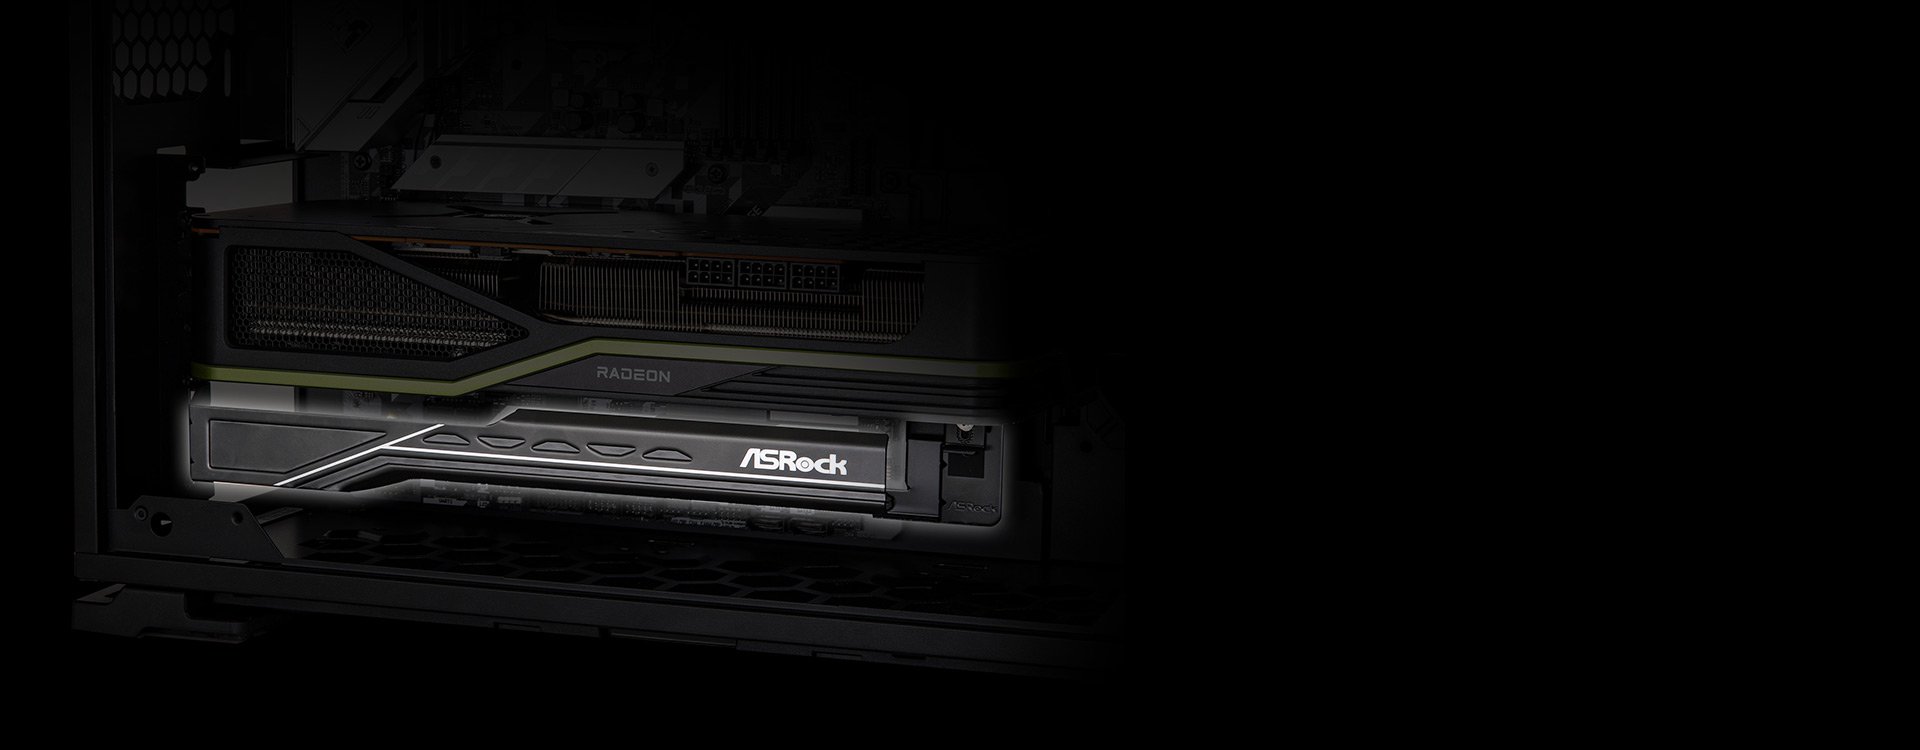 素晴らしい ストアセレクト店ASRock グラフィックボード AMD Radeon RX6950XT 搭載モデル OCF 16G 